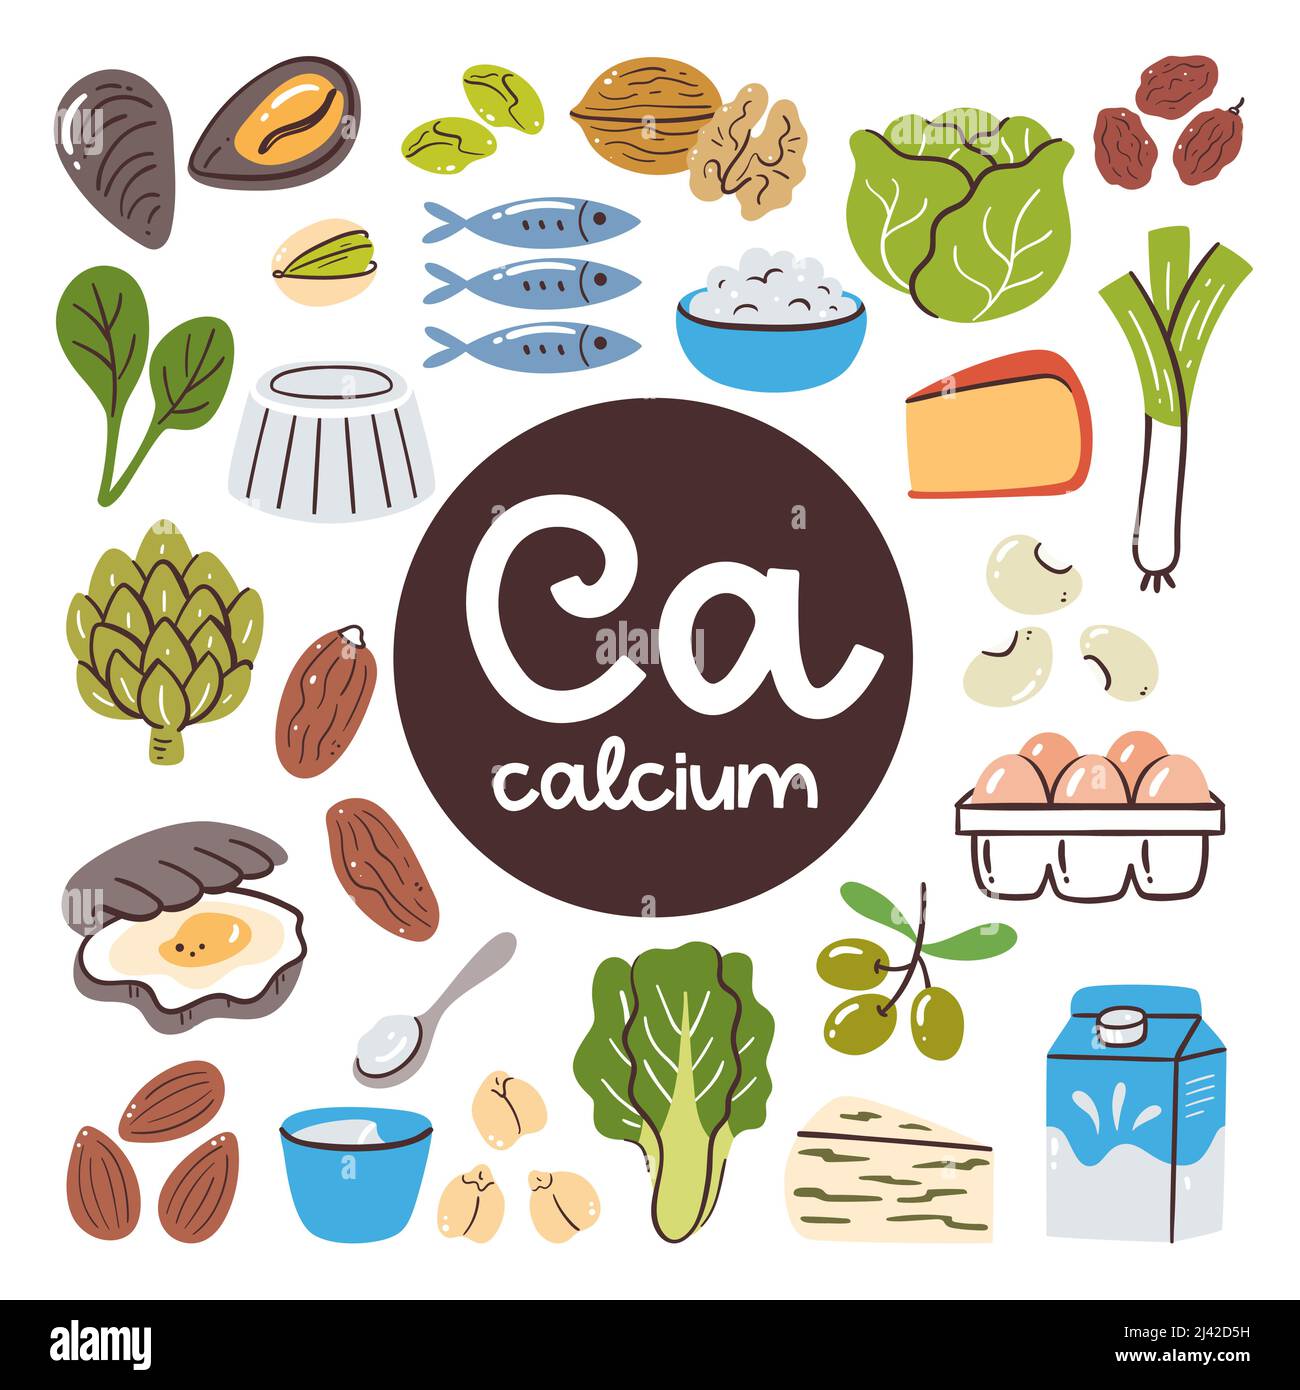 Lebensmittel mit hohem Calciumgehalt. Zutaten zum Kochen. Gemüse, Milchprodukte, Nüsse, Seefisch. Stock Vektor